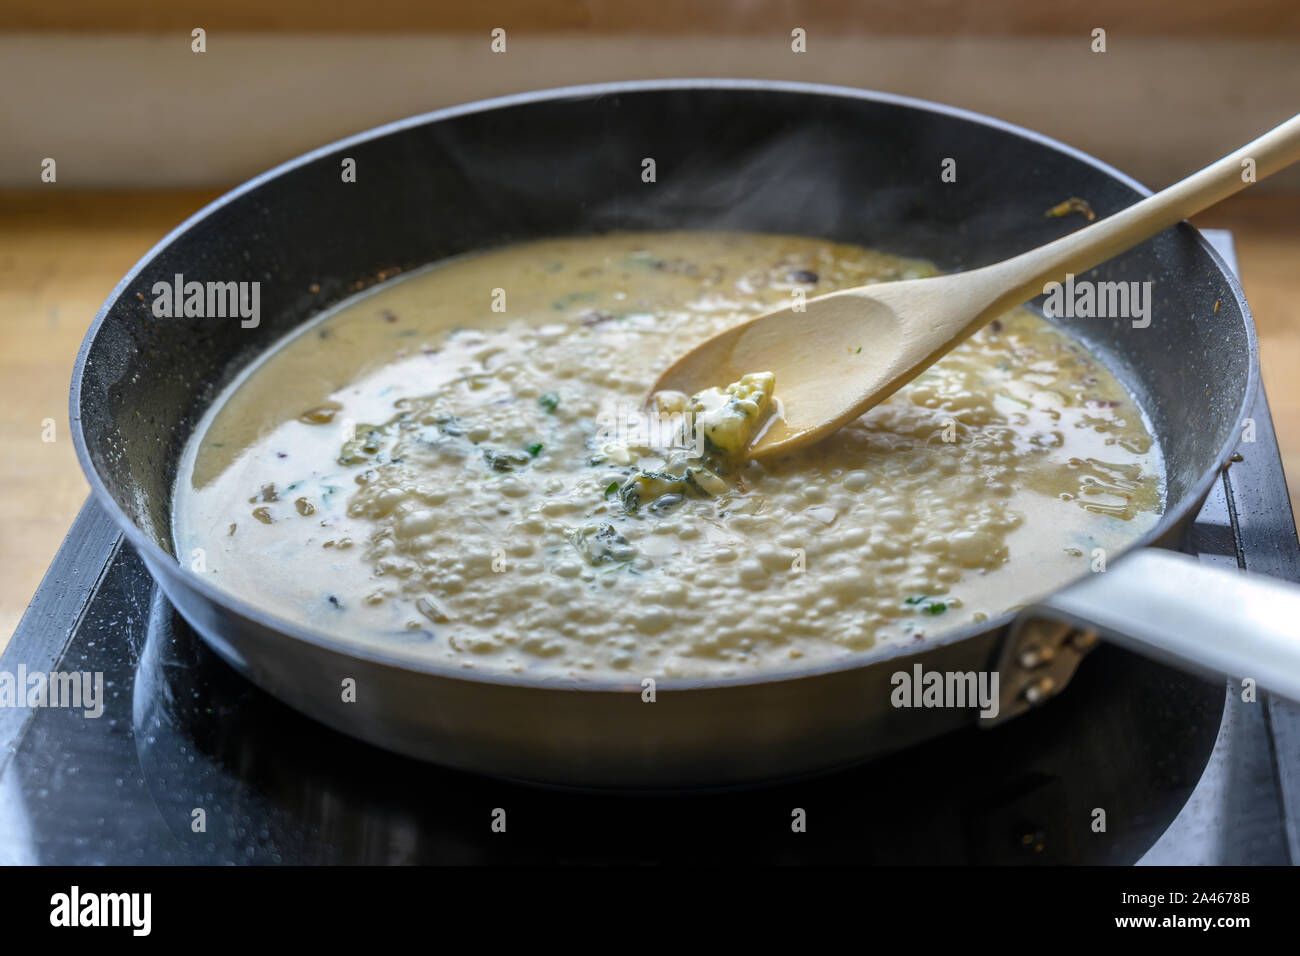 Sauce au fromage gorgonzola ébullition dans la casserole sur un poêle est remué avec une cuillère en bois, concept de cuisine, de discussion, de la profondeur de champ étroite Banque D'Images